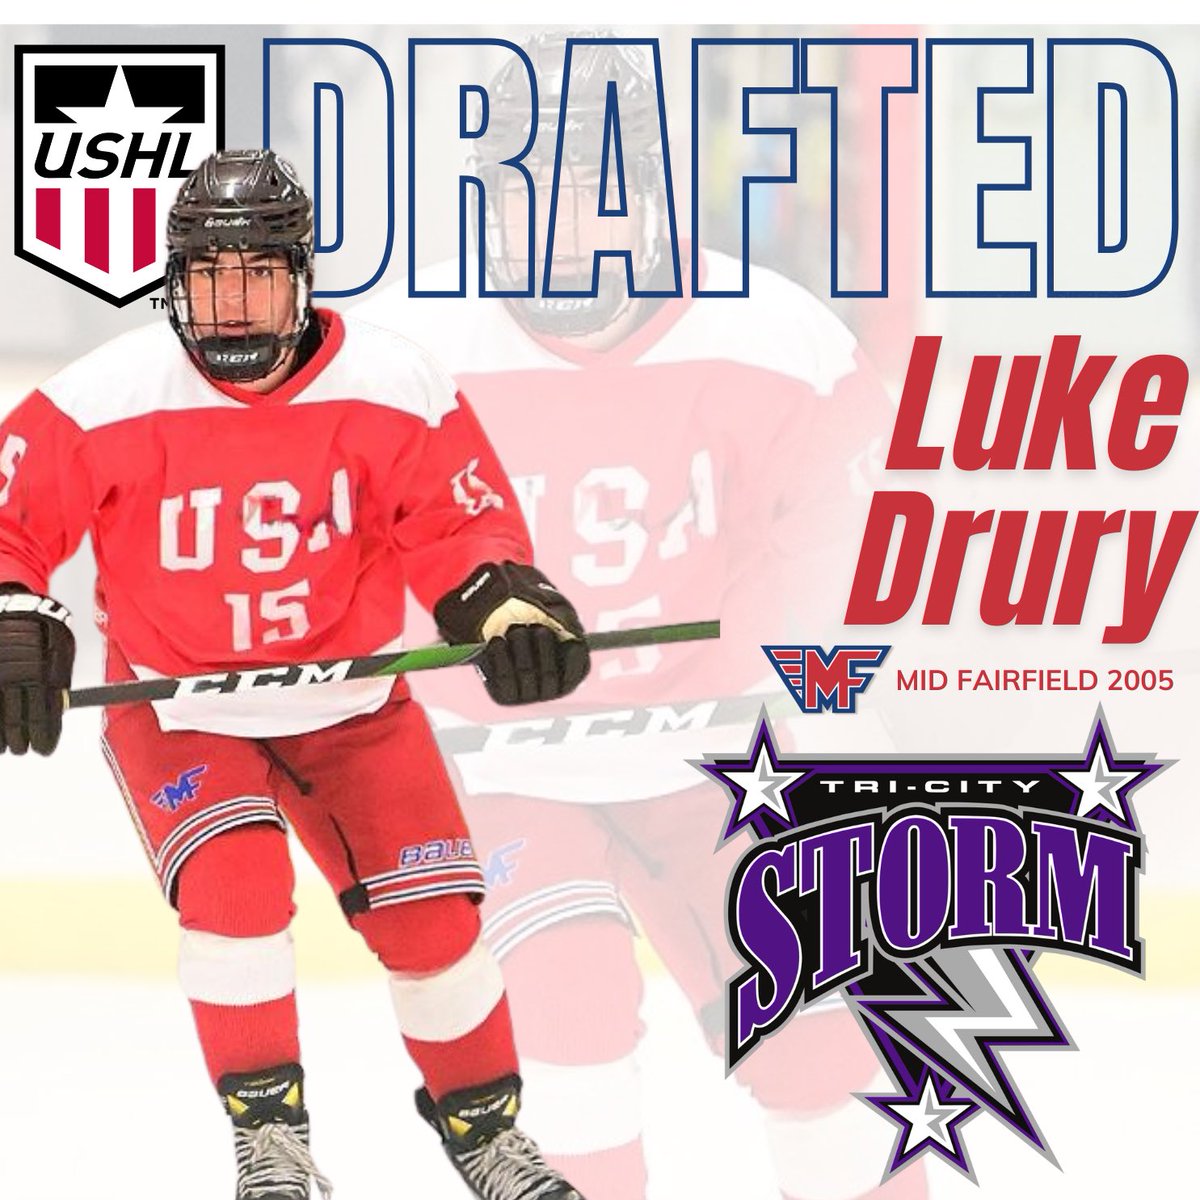 Congrats Luke! @TriCityStorm selected 05 Luke Drury in Phase 2 of rhe @USHL draft #RollMF #USHLdraft